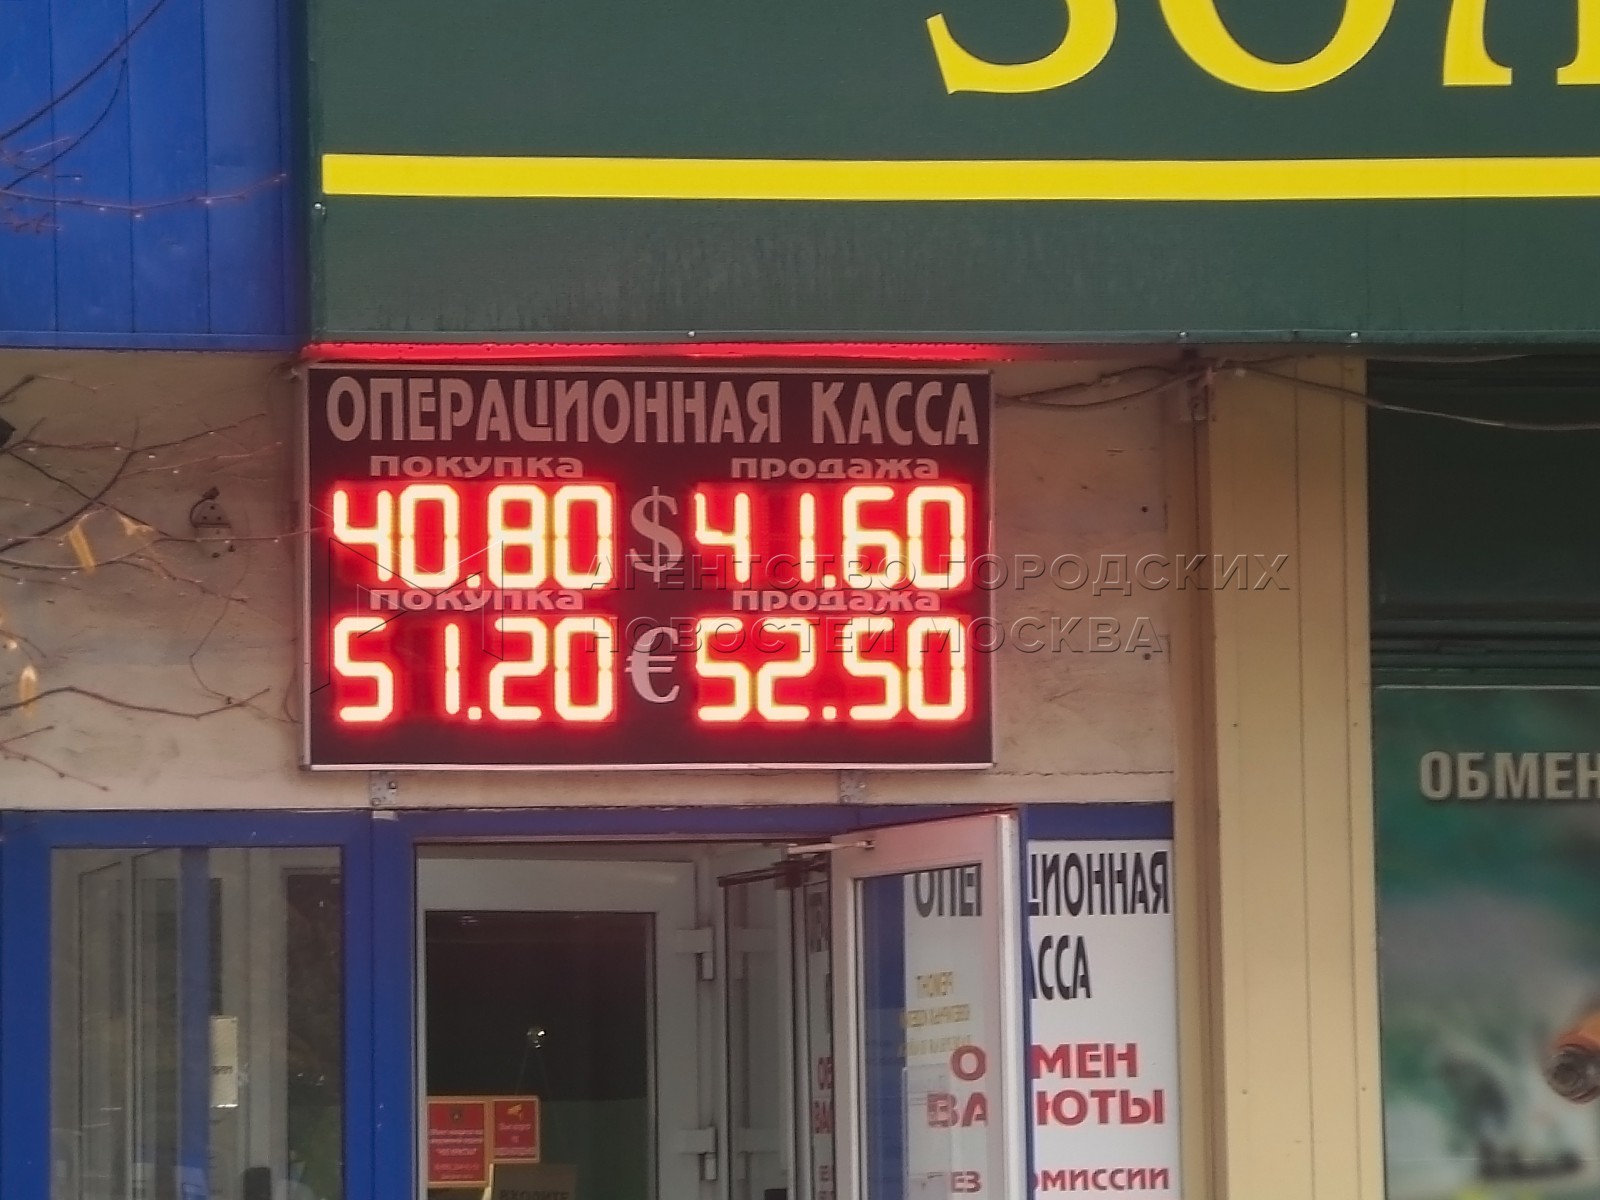 Кантемировская обмен валюты 20 тысяч гривен сколько в рублях на сегодня